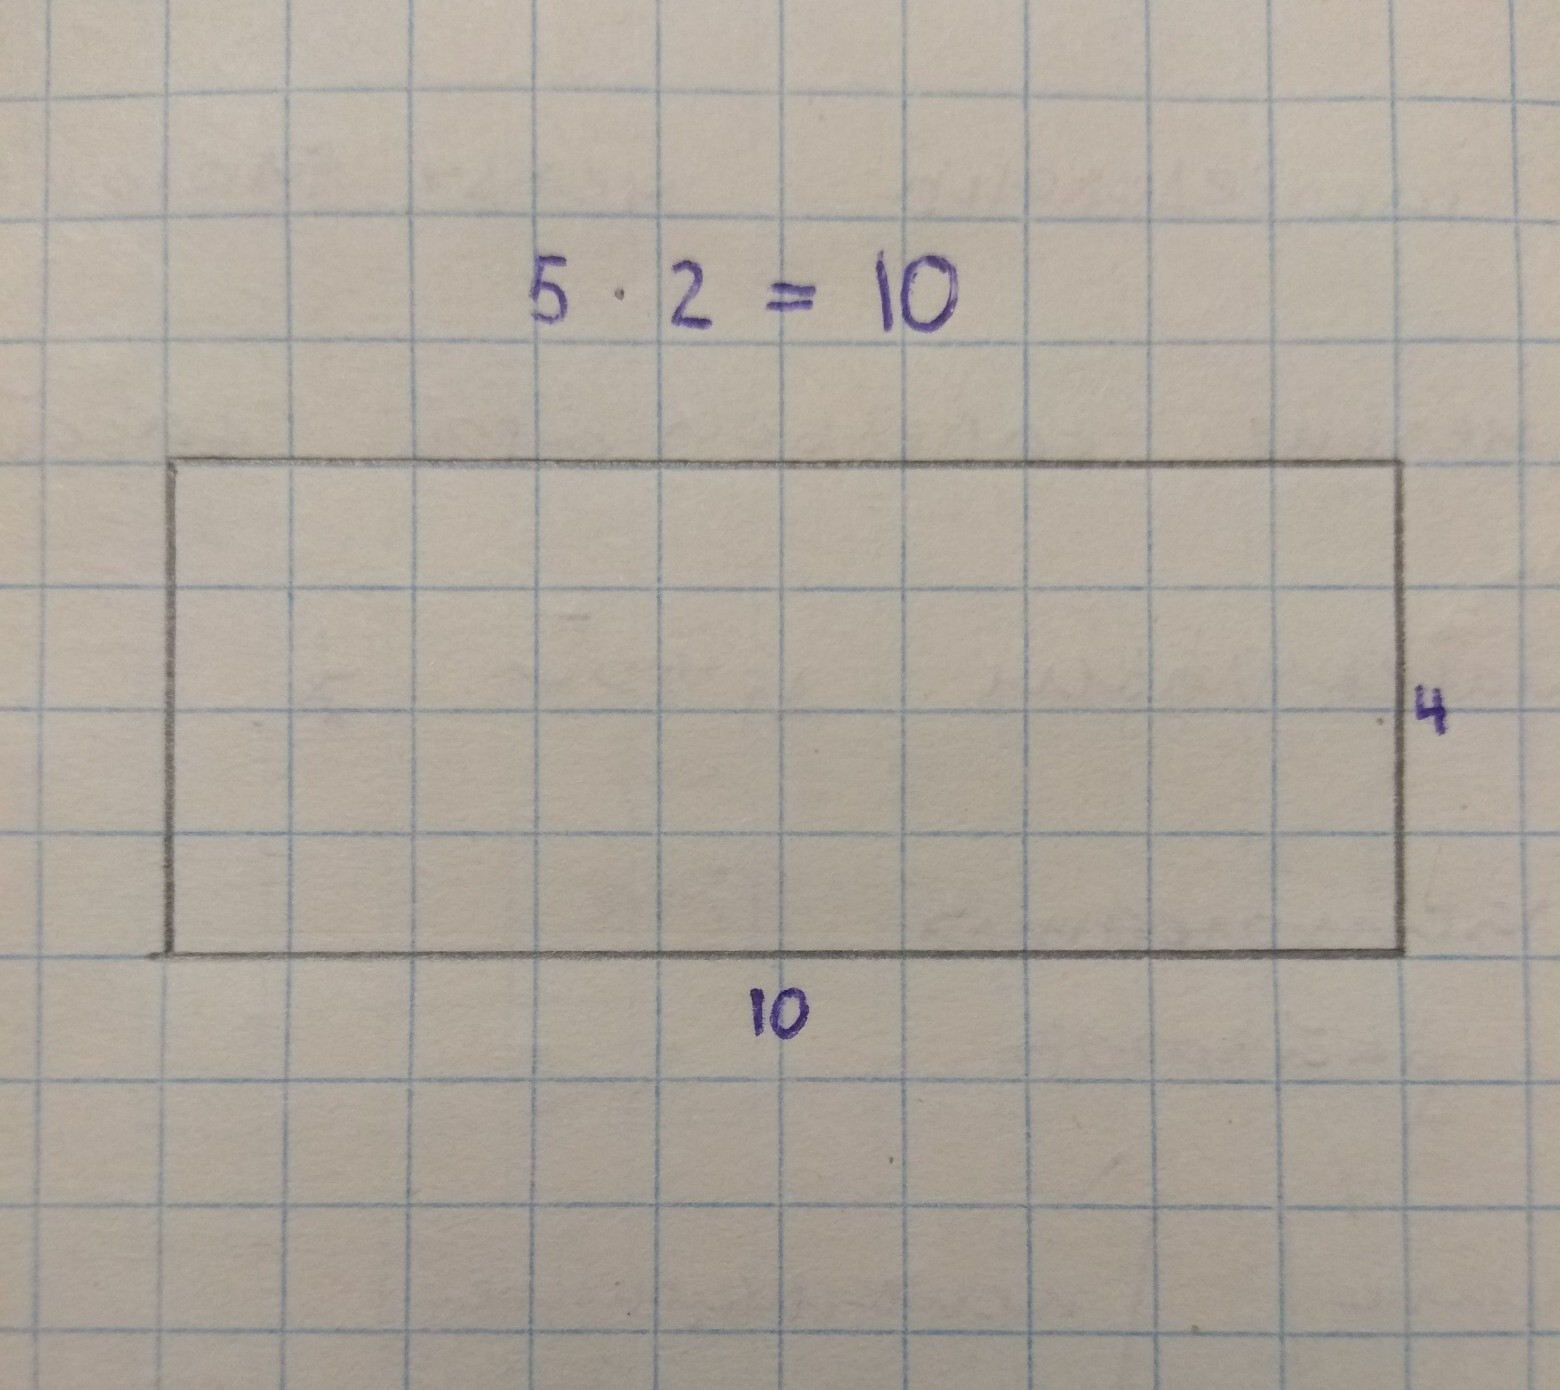 Прямоугольник 13 на 5. Чертить прямоугольник на бумаге. Длинная сторона прямоугольника. Прямоугольник 3 на 5. Прямоугольник 4х5.